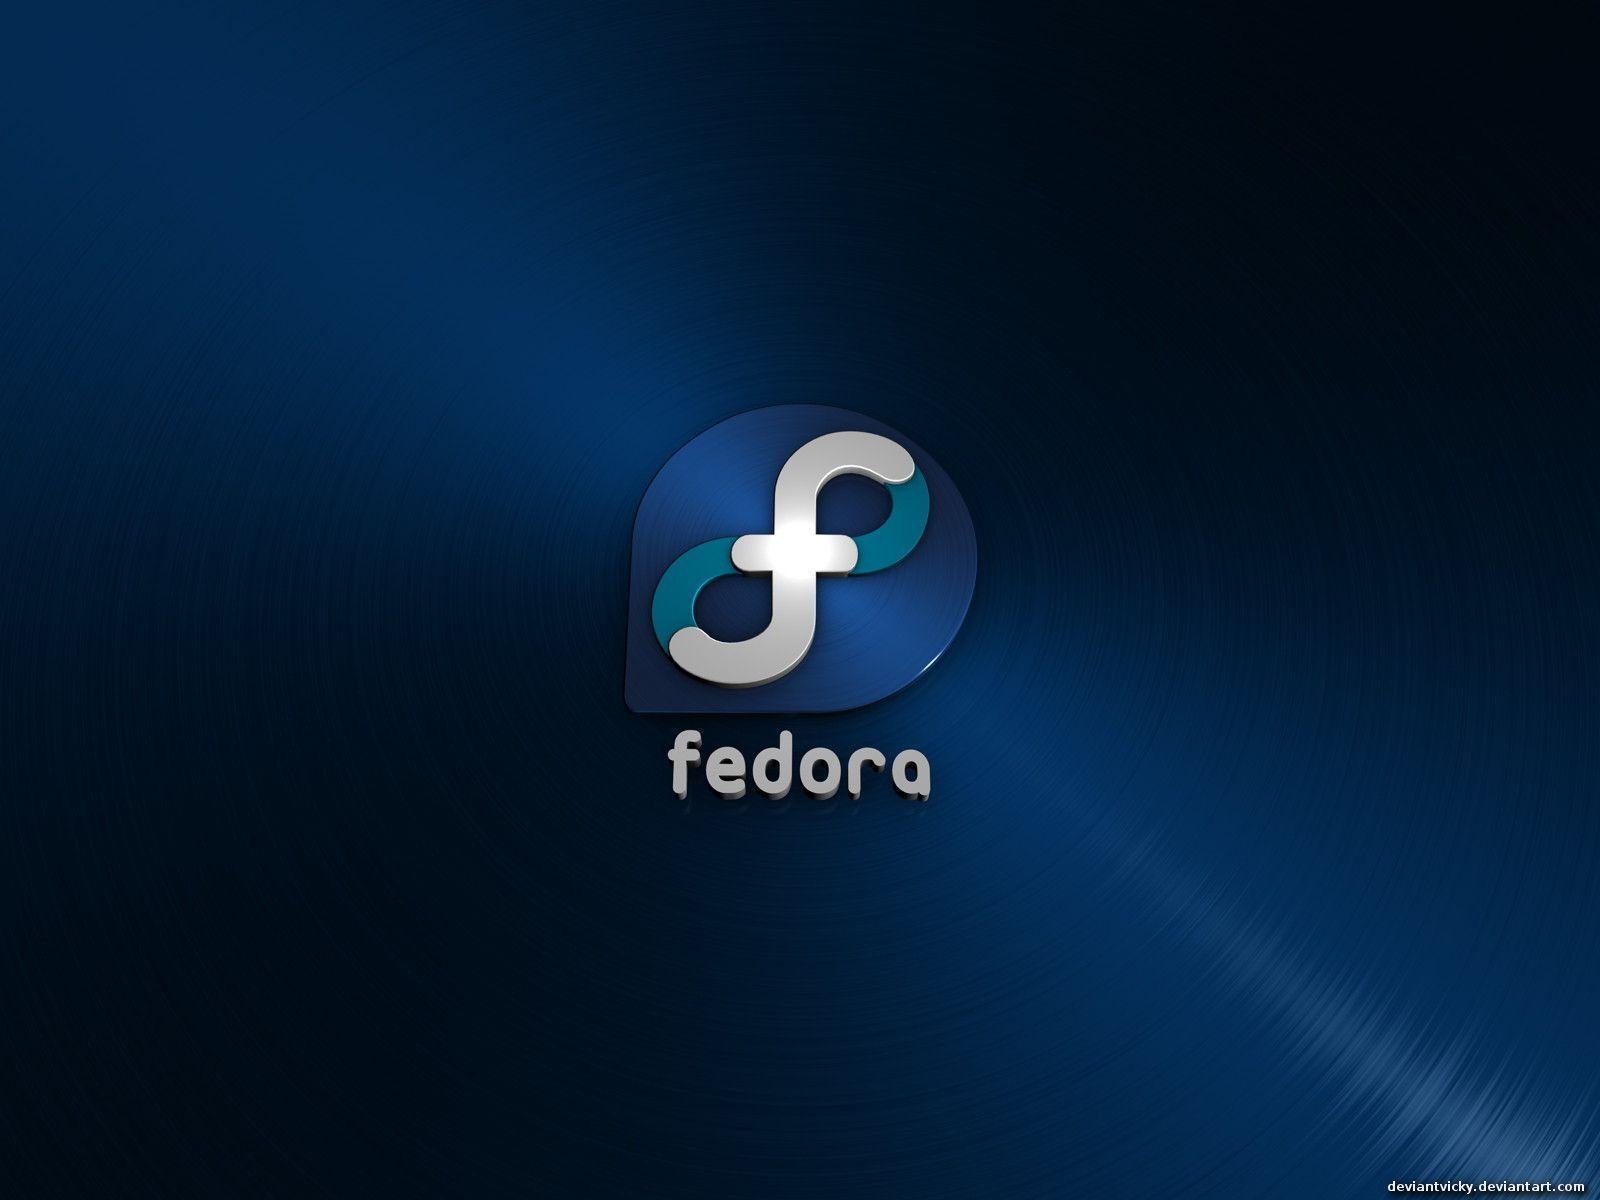 77+] Fedora Linux Wallpaper - WallpaperSafari